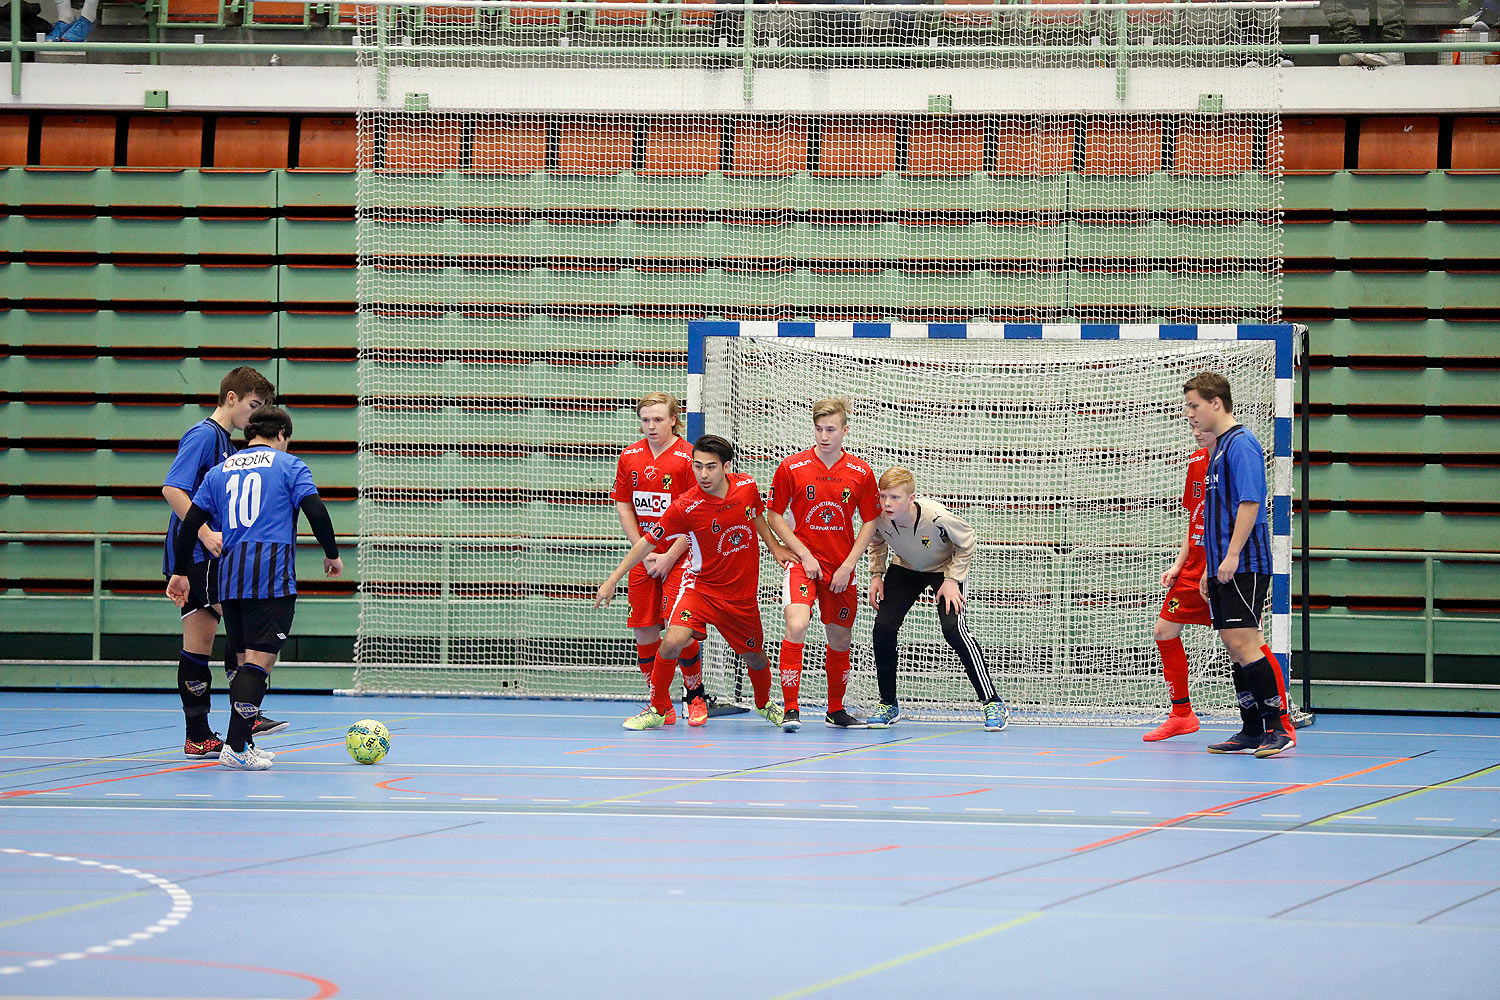 Skövde Futsalcup Herrjuniorer Ulricehamns IFK-Töreboda IK,herr,Arena Skövde,Skövde,Sverige,Skövde Futsalcup 2016,Futsal,2016,141922